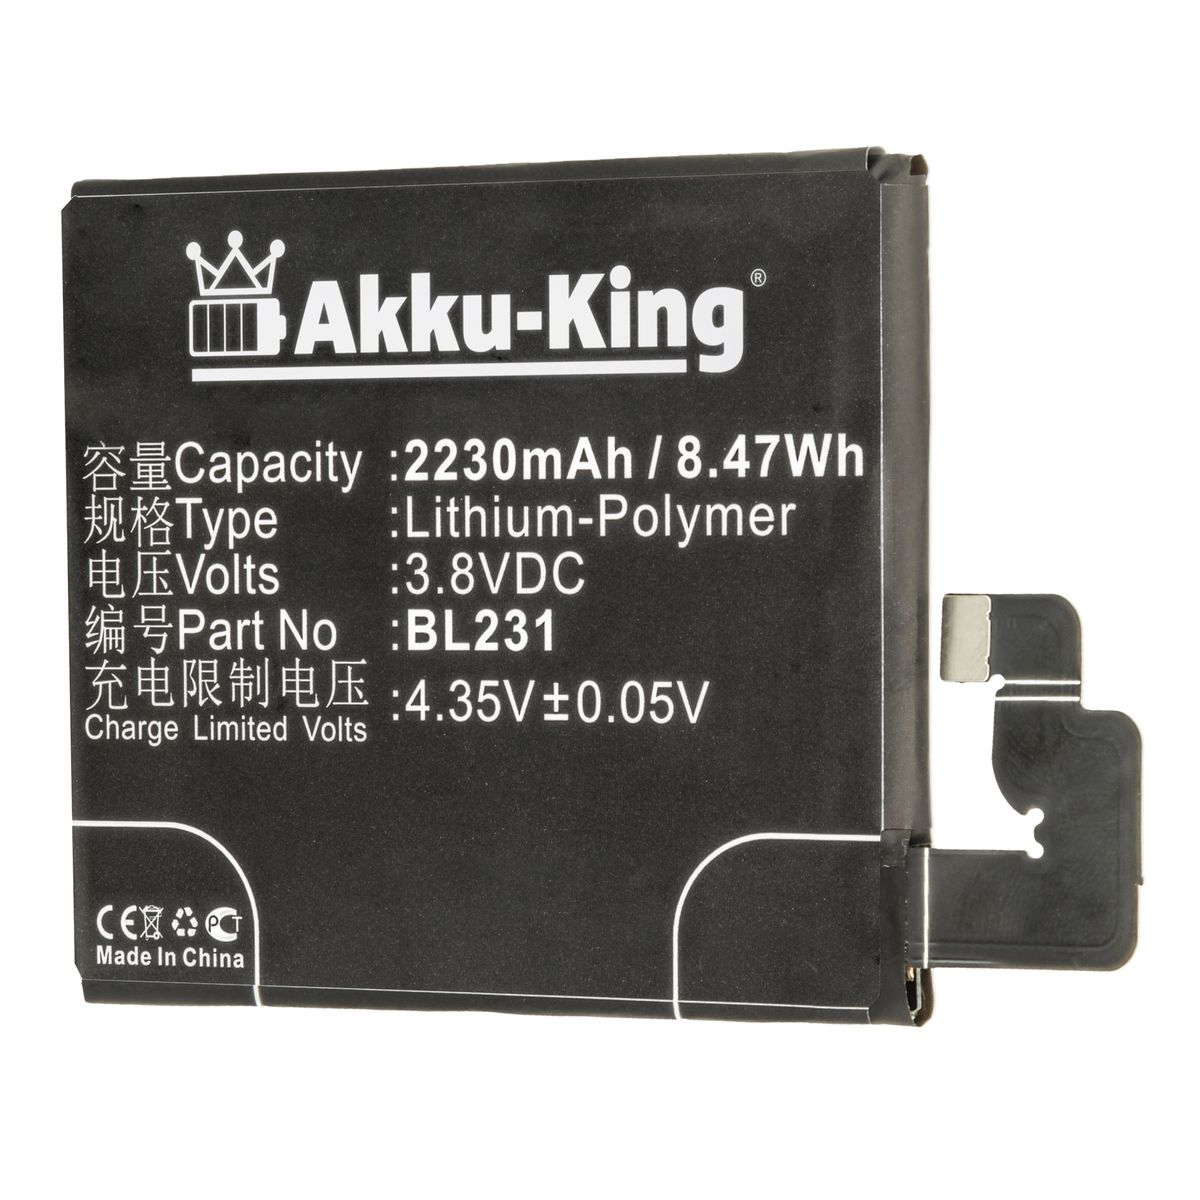 AKKU-KING Akku kompatibel mit Lenovo 3.8 Volt, Handy-Akku, Li-Polymer BL231 2230mAh